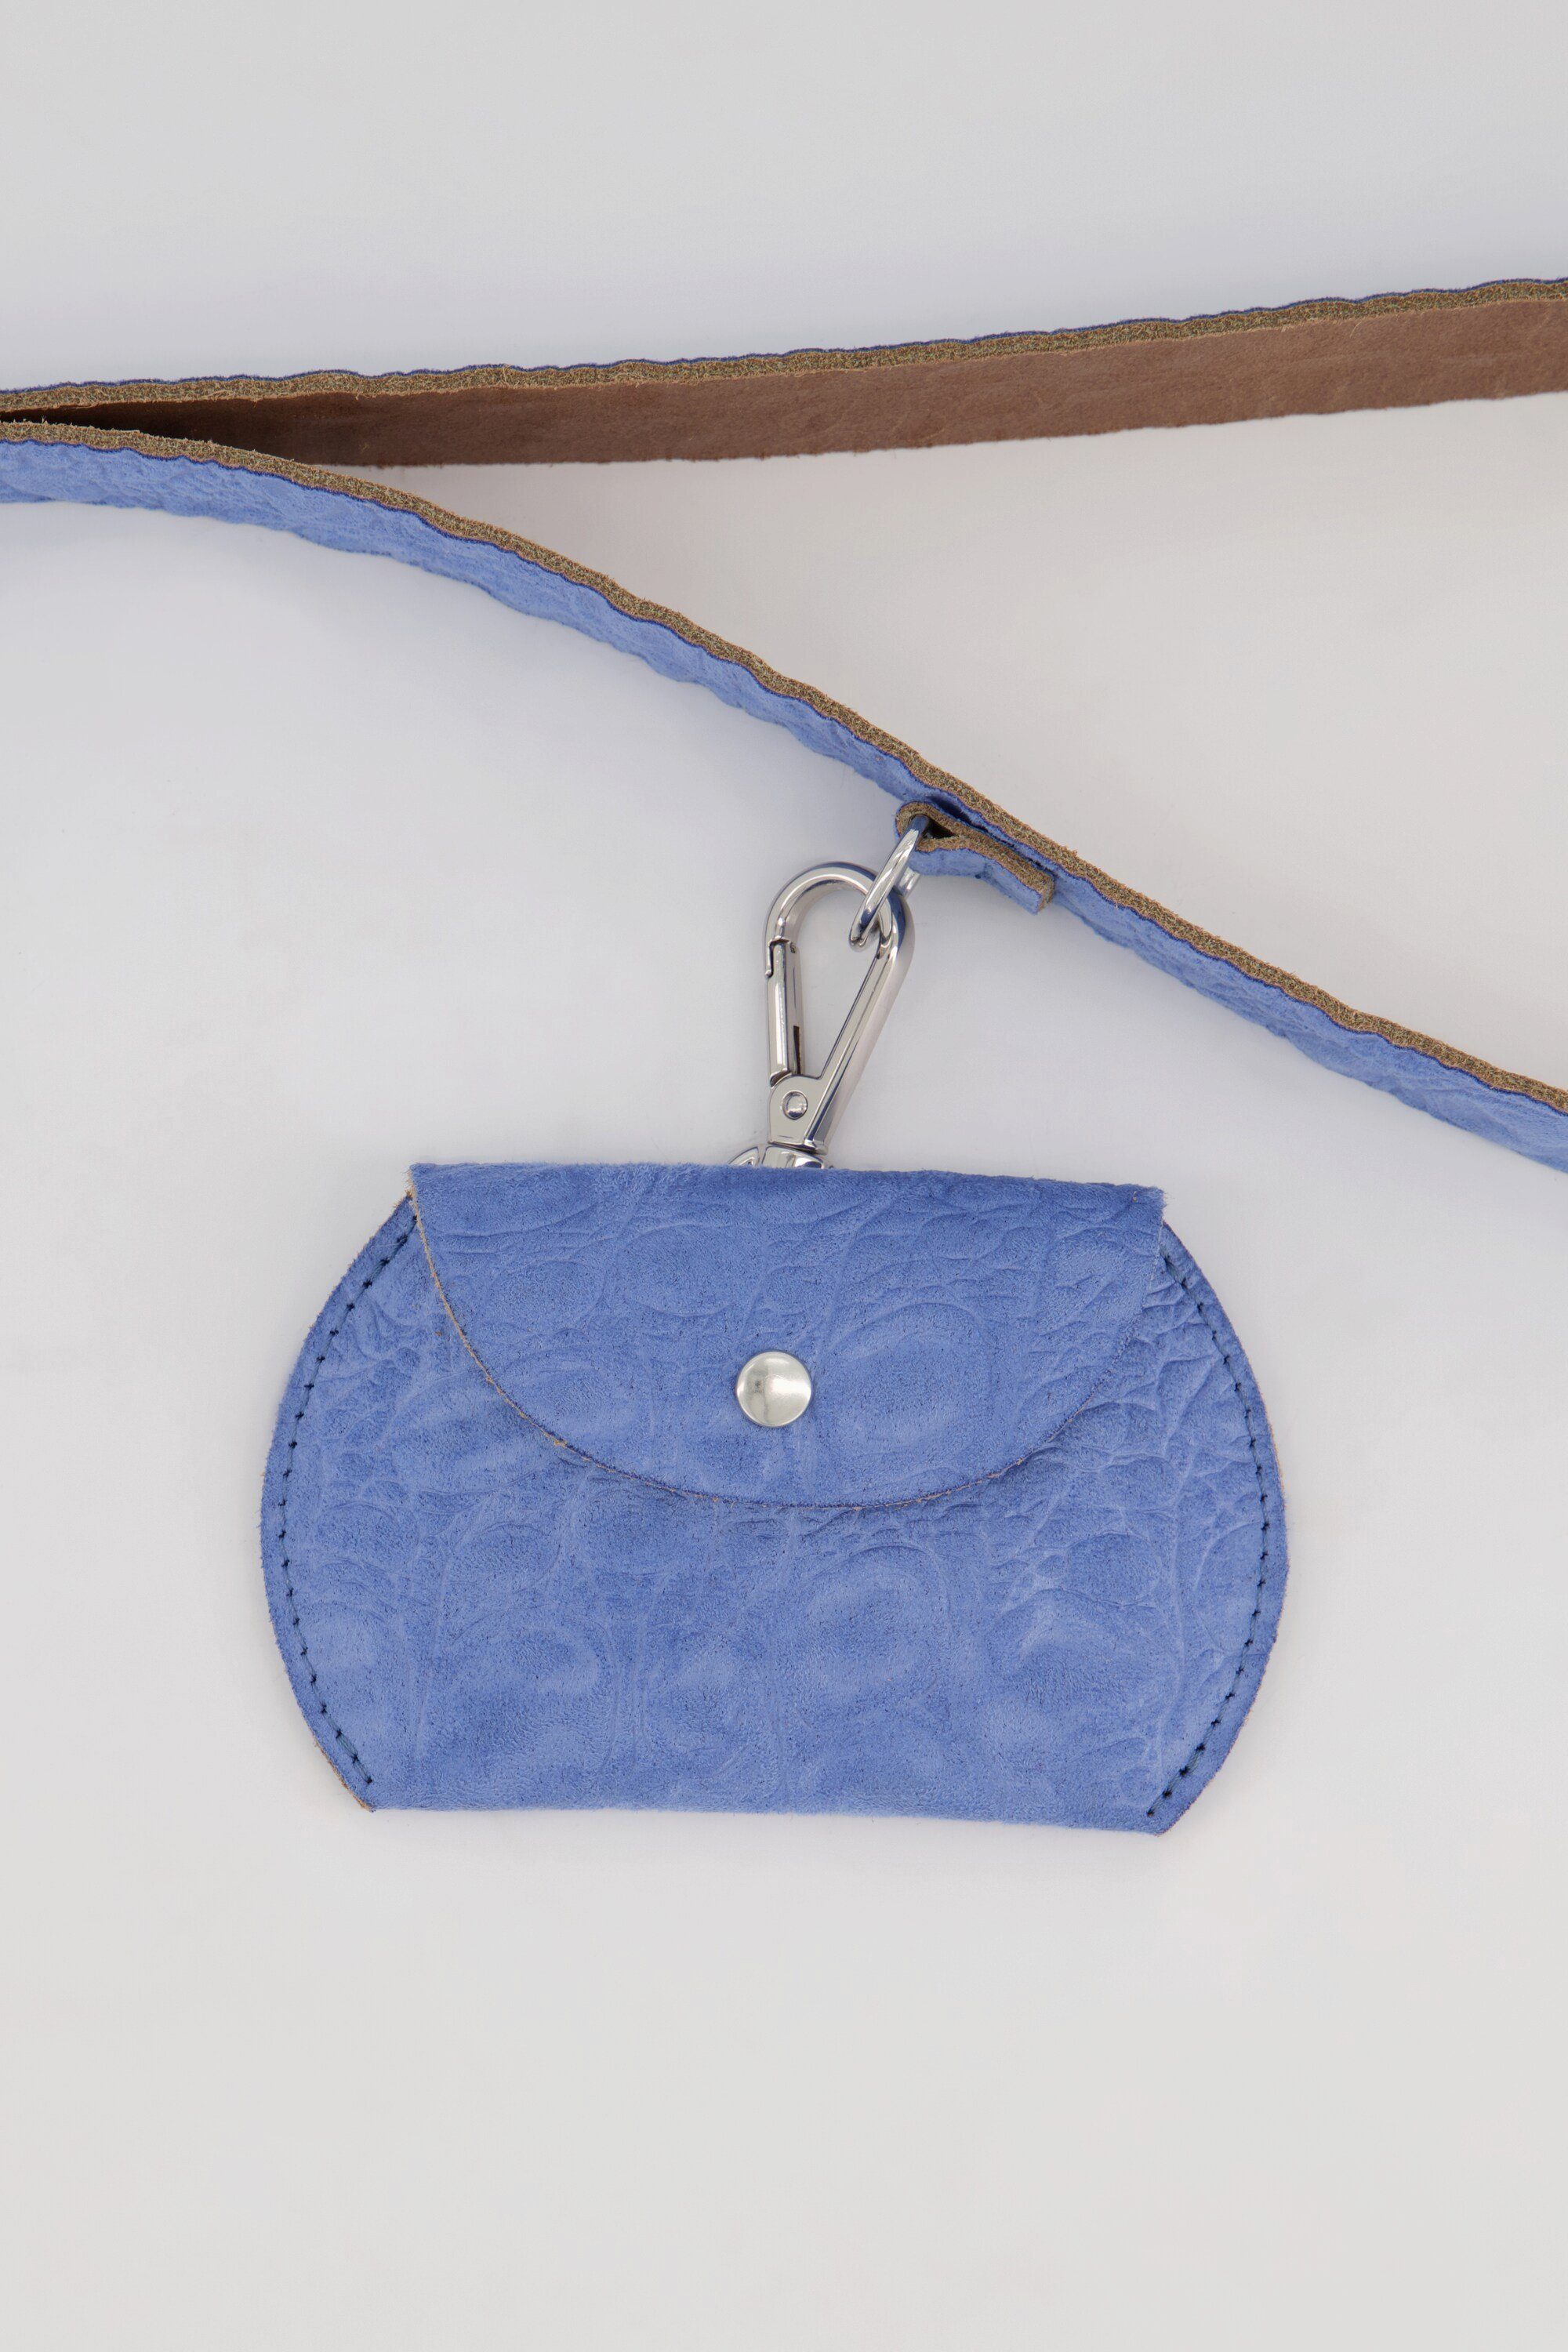 Handtasche Popken lichtblau Ledertasche abnehmbare Krokoprägung Minitaschen Ulla